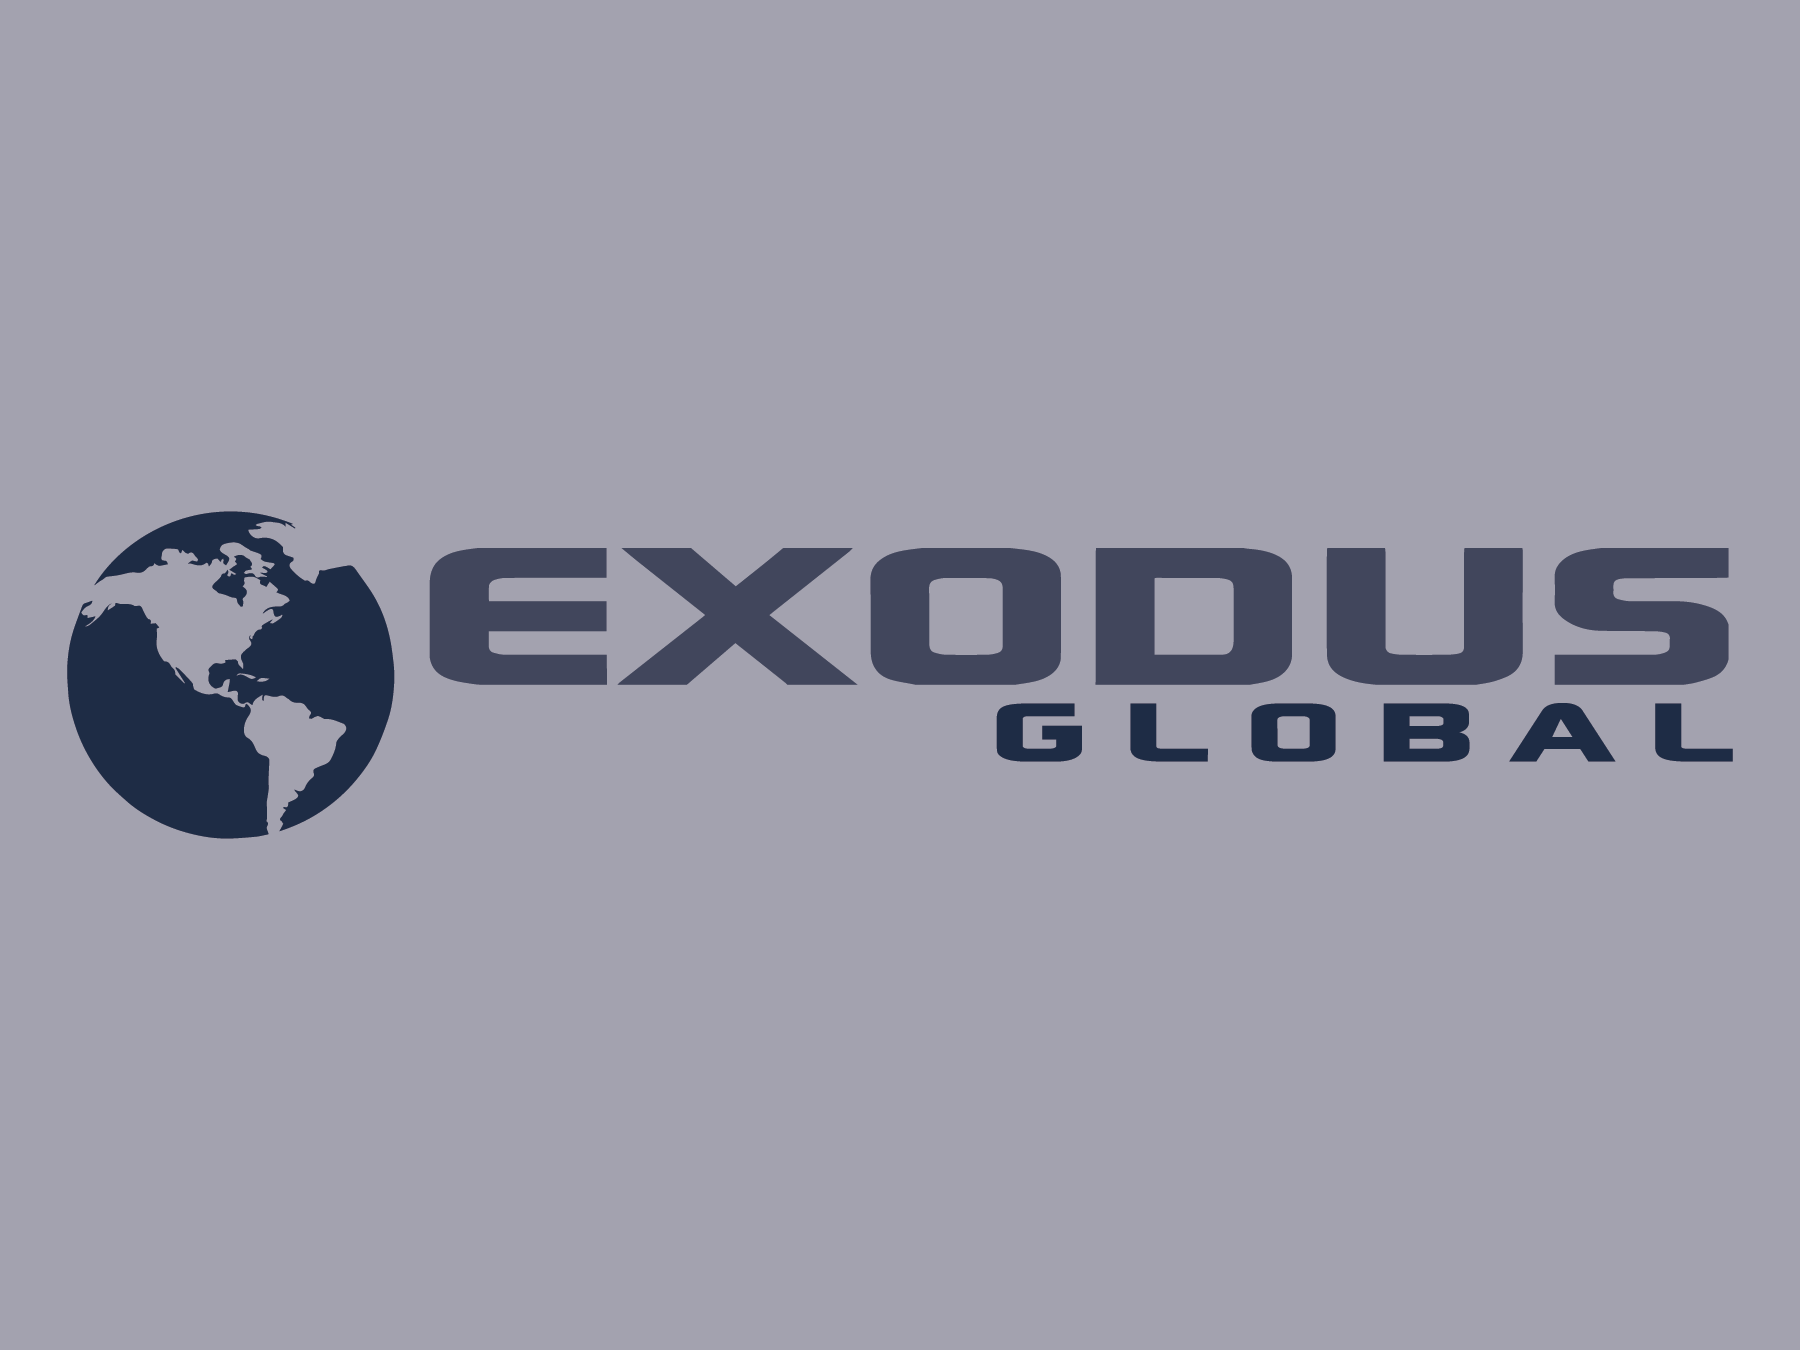 EXODUS GLOBAL